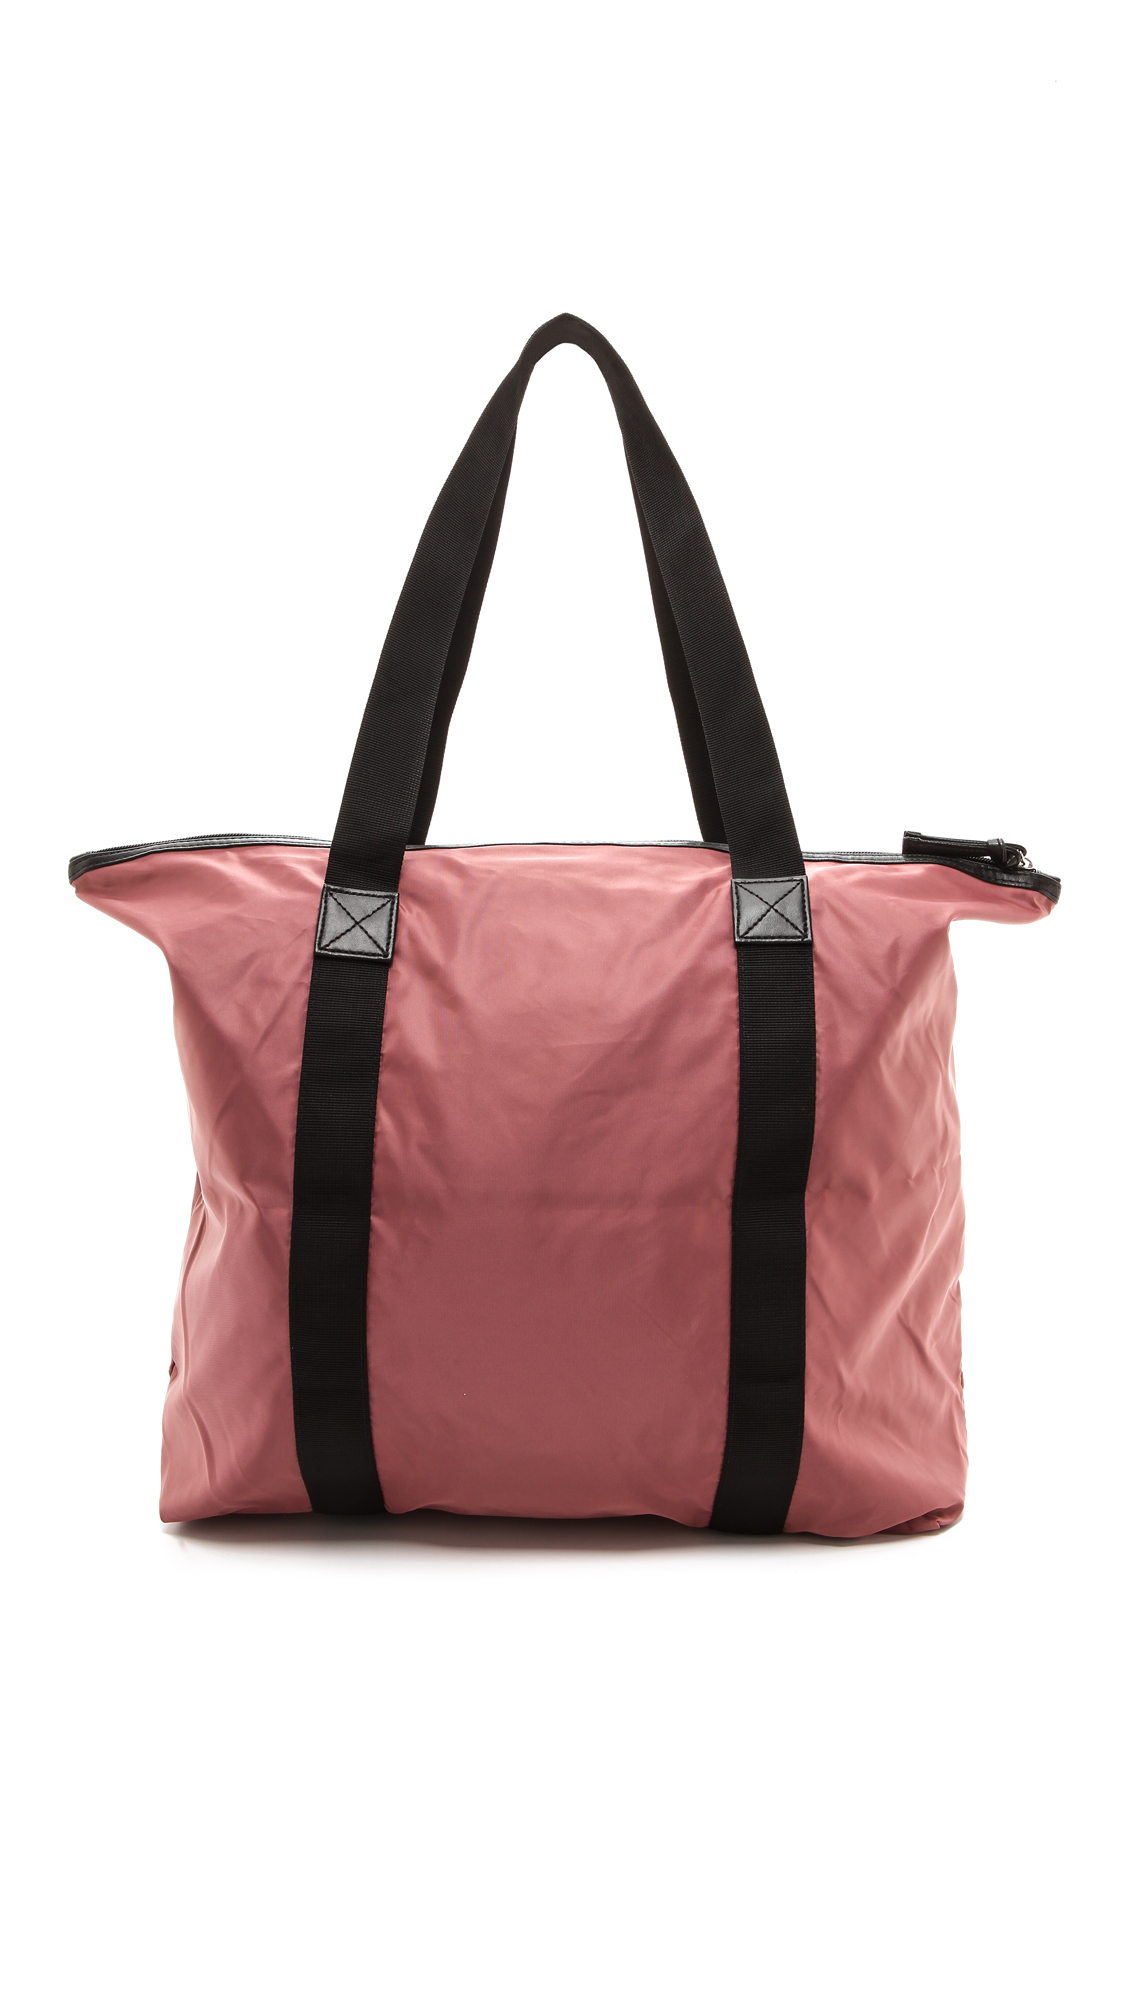 Lyst - Day Birger Et Mikkelsen Day Gweneth Tote Bag - Blush in Pink